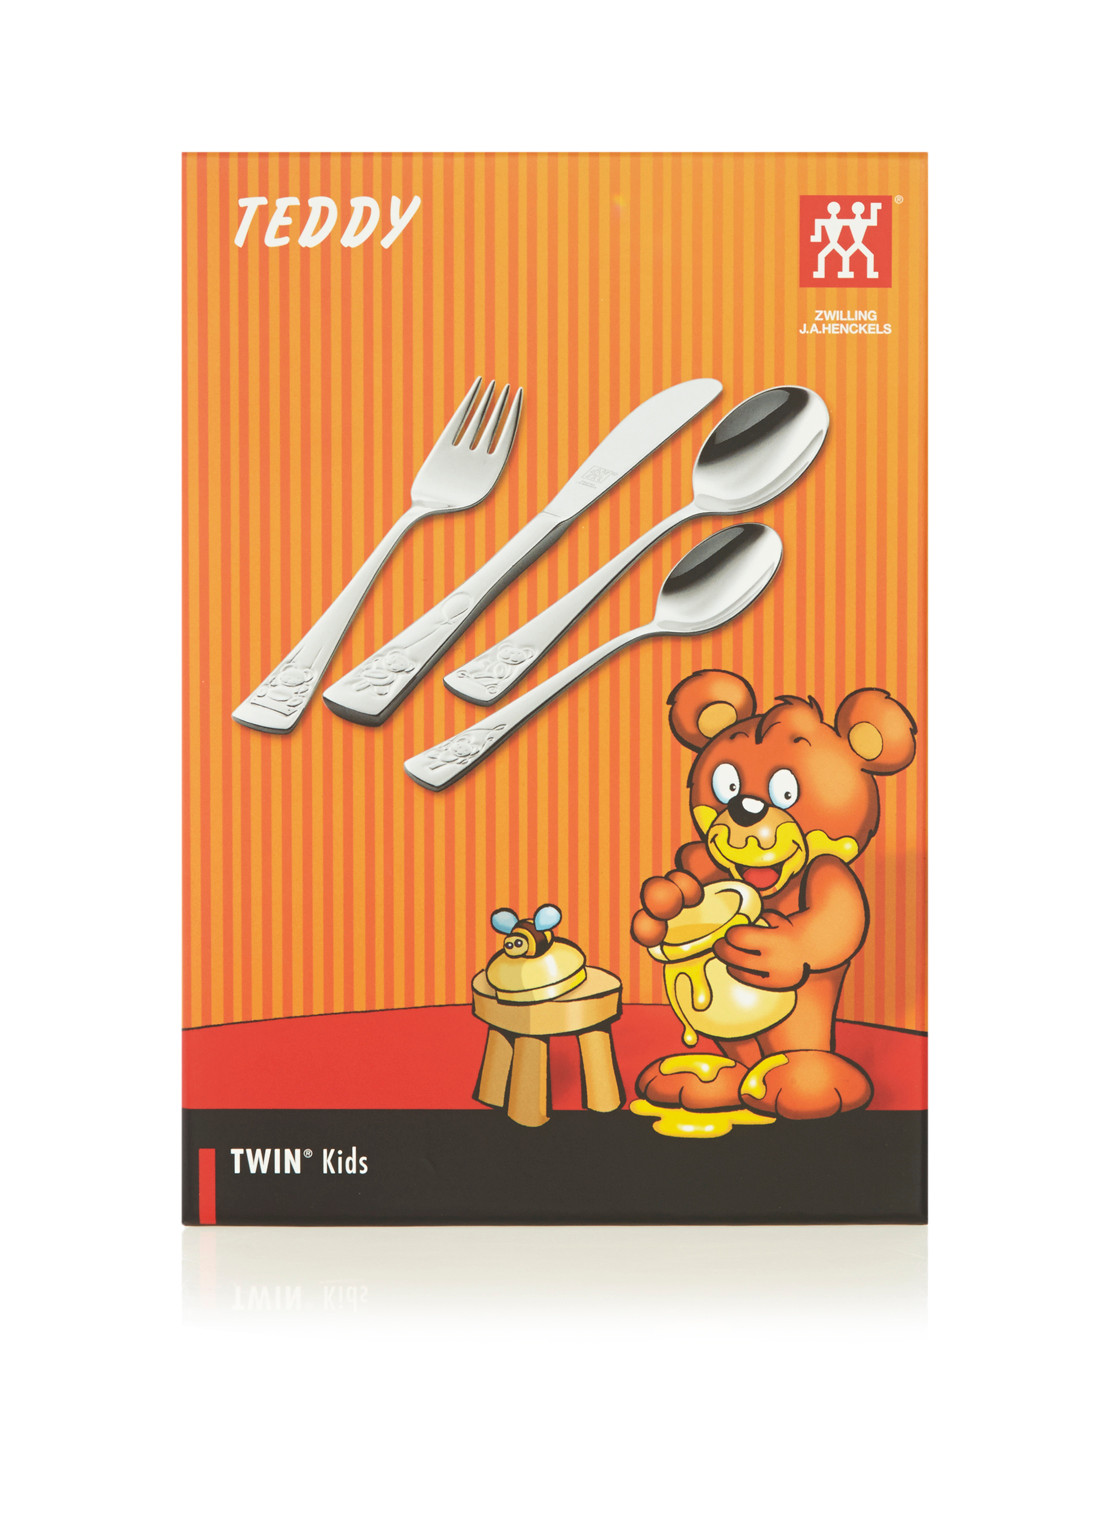 strelen Prik fonds Kinderbestek Teddy van Zwilling J.A. Henckels. Deze 4-delige bestekset uit  de Twin Kids collectie bestaat uit een vork, mes en twee lepels. Op de set  staat een beertje op een schommel, met